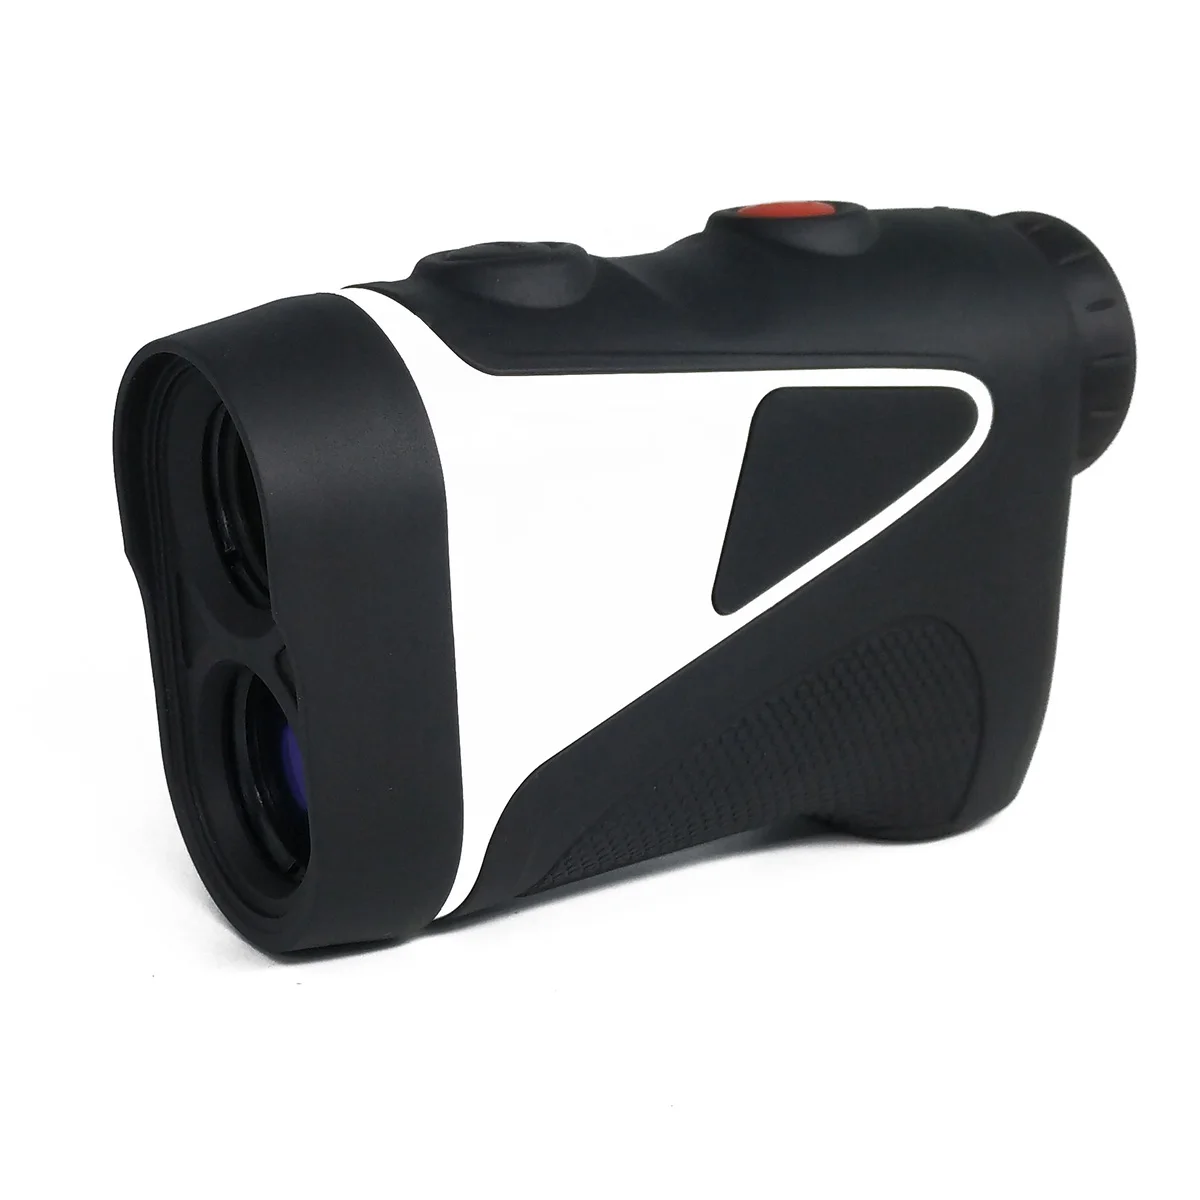 

1100 Yards Golf Slope Laser Rangefinder with Flagpole Lock Vibration Range Finder for Golfing